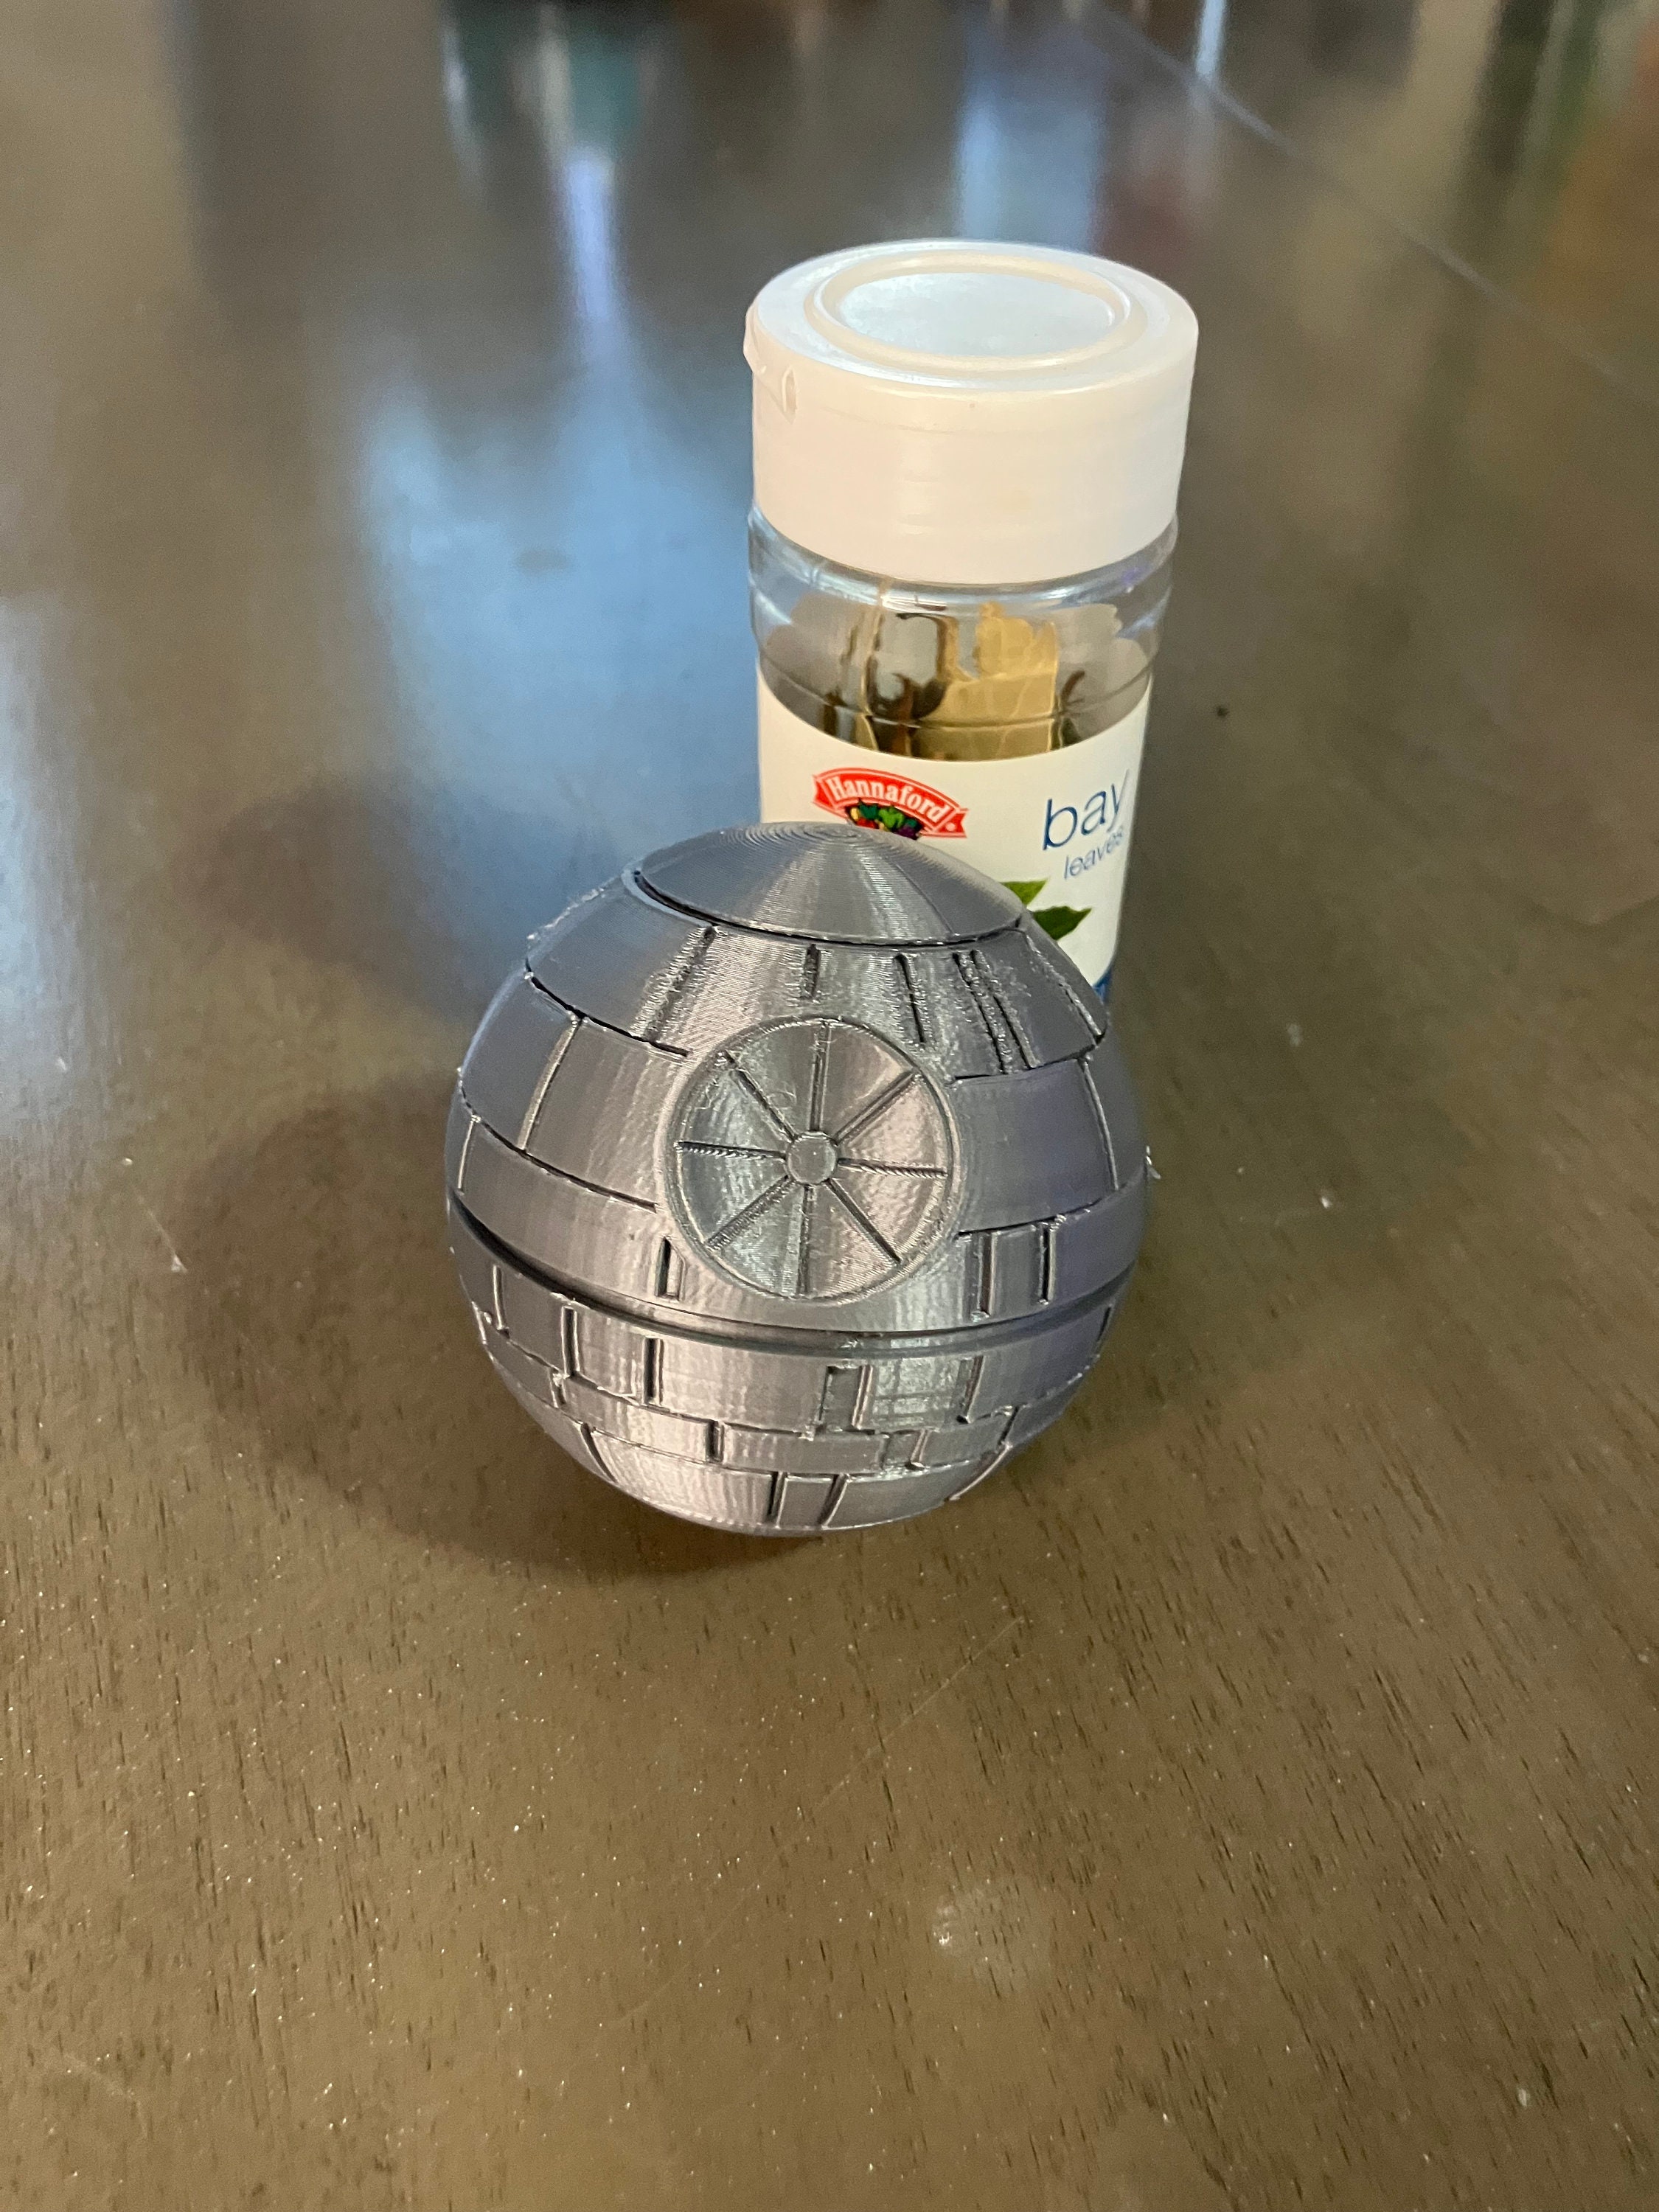 Star War Death Star Grinder Aluminum Herb Spice Crusher 3part